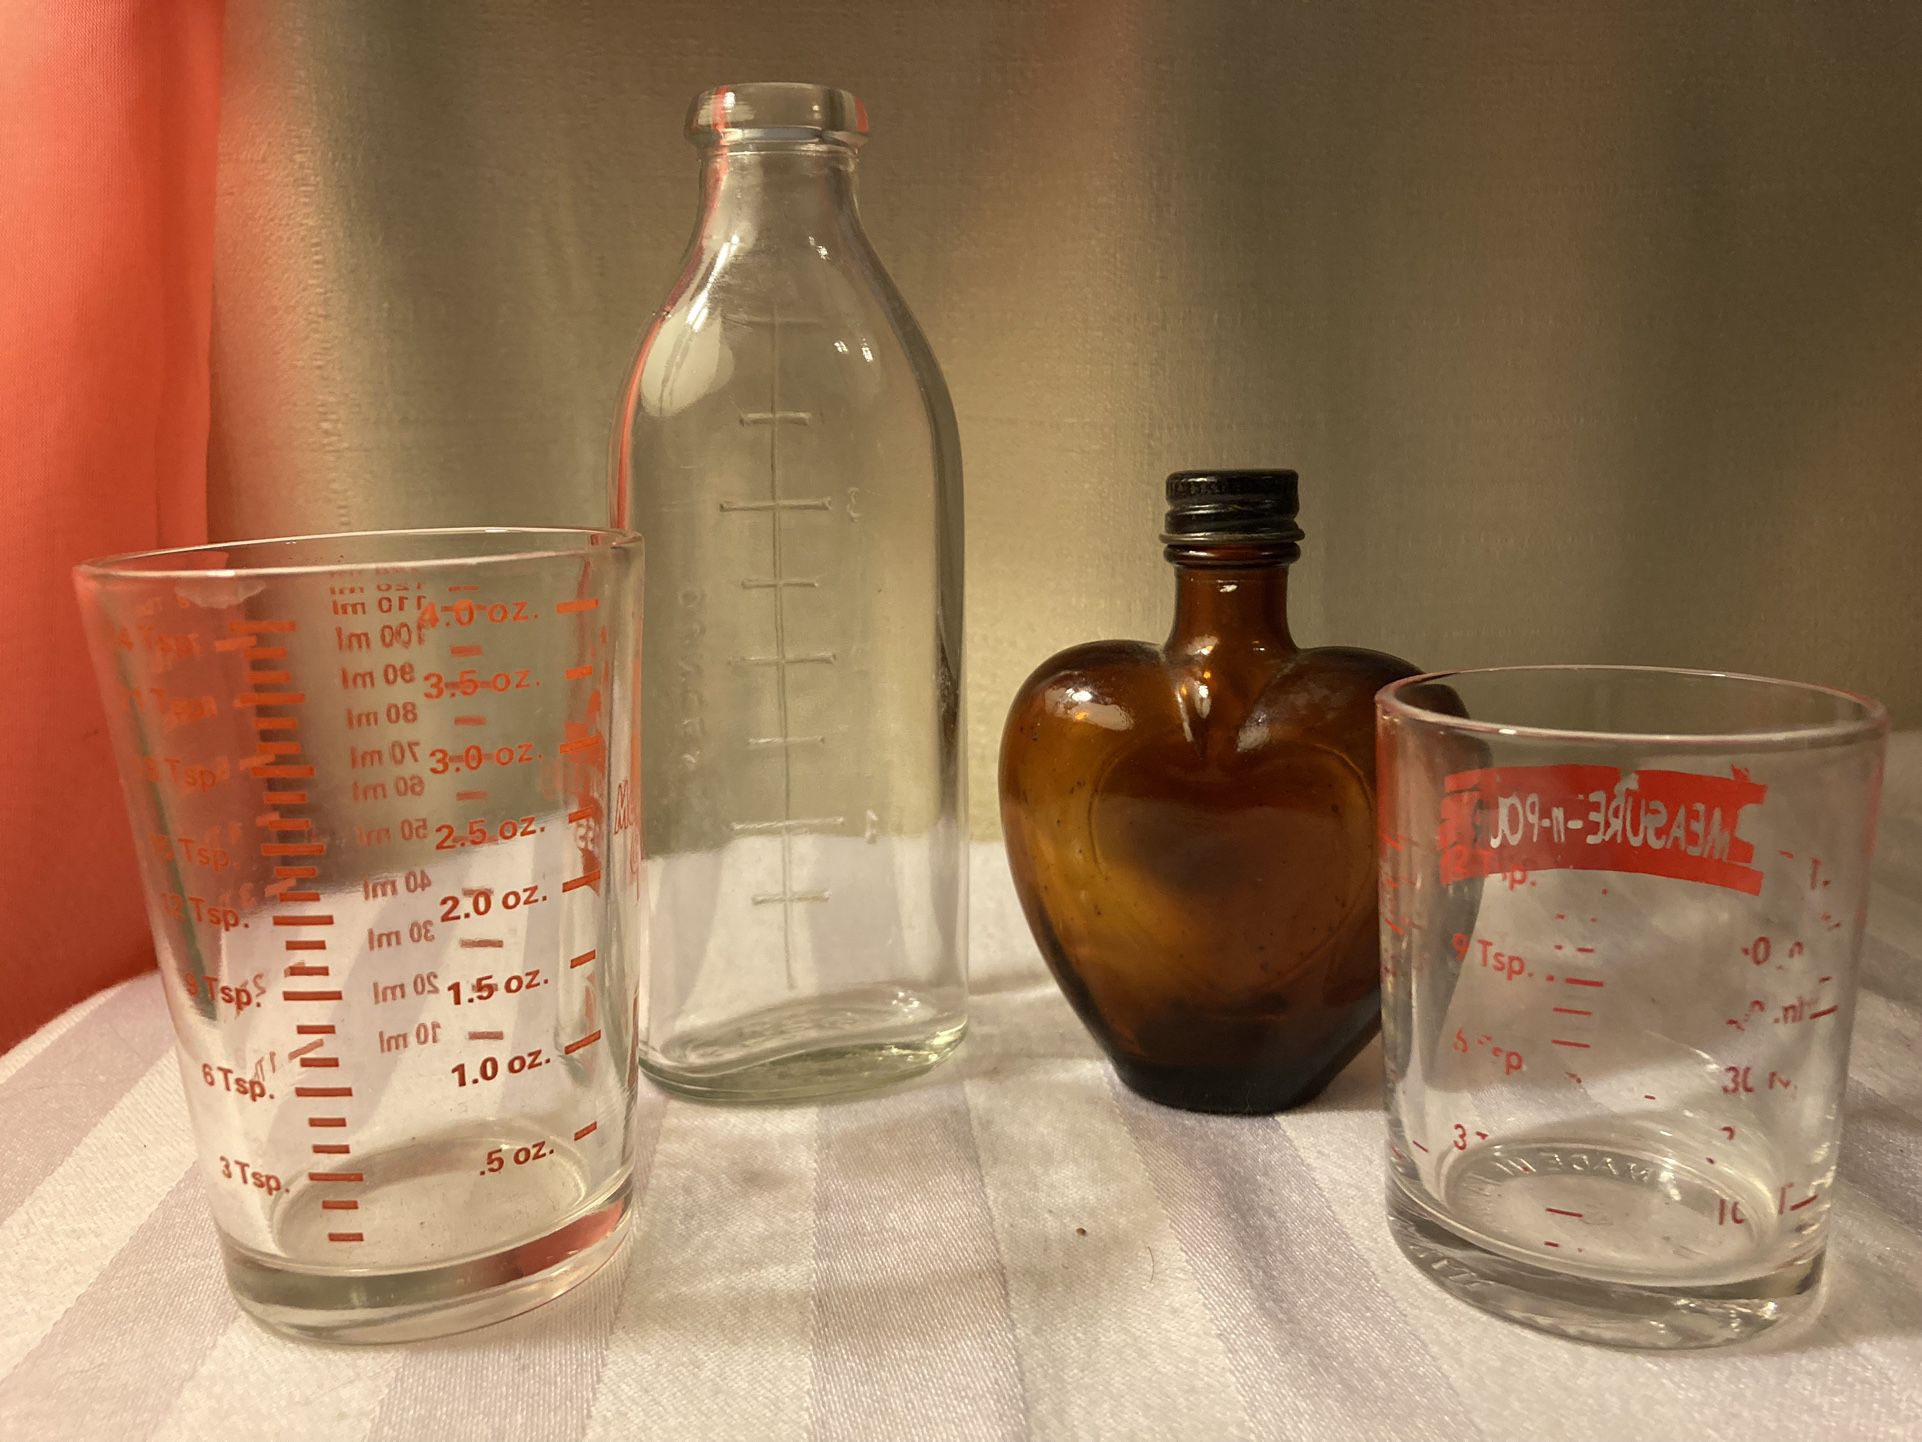 Vintage Bottles & More